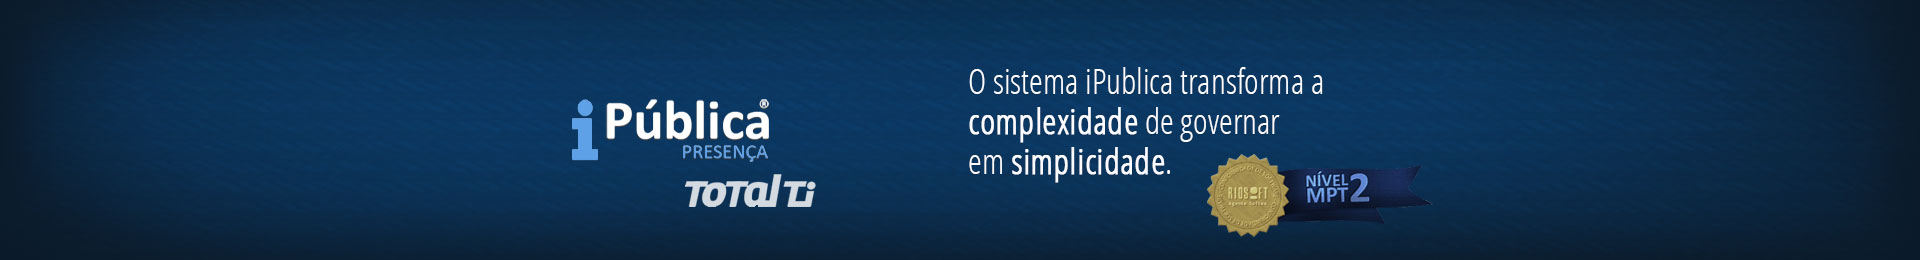 Banner do iPública que transforma a complexidade de governar em simplicidade